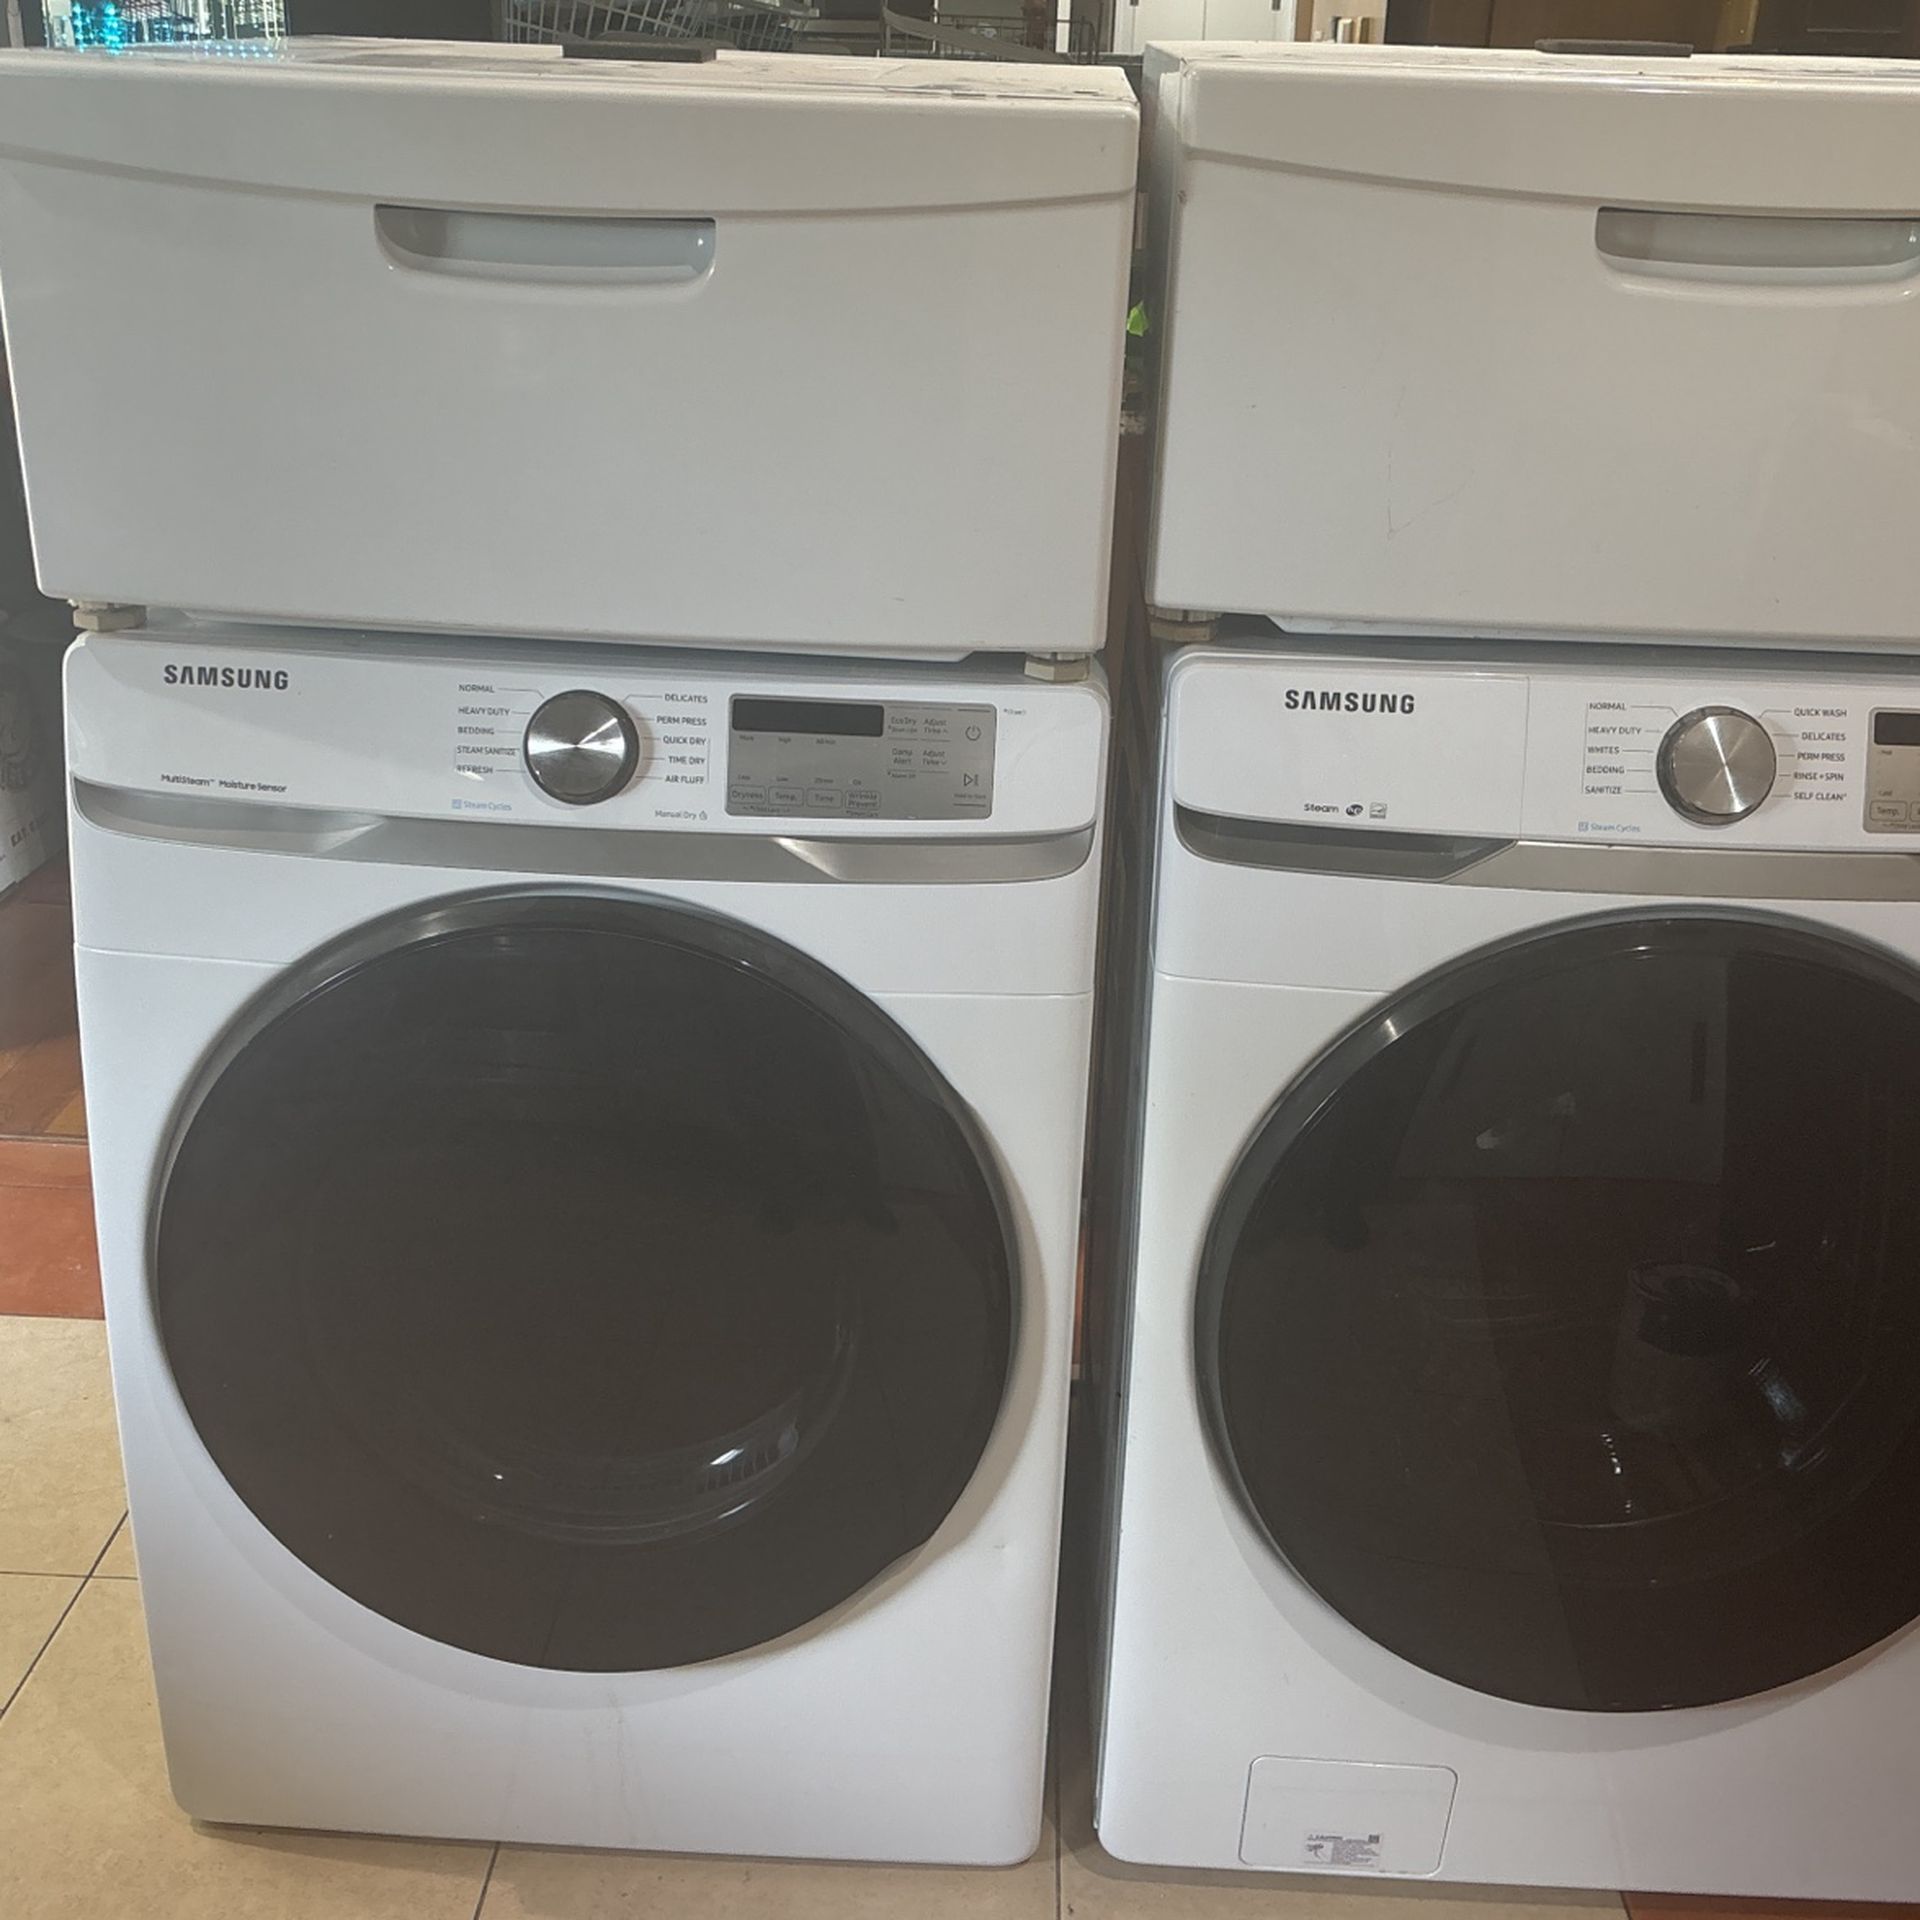 Samsung Washer Dryer Set With Pedestals